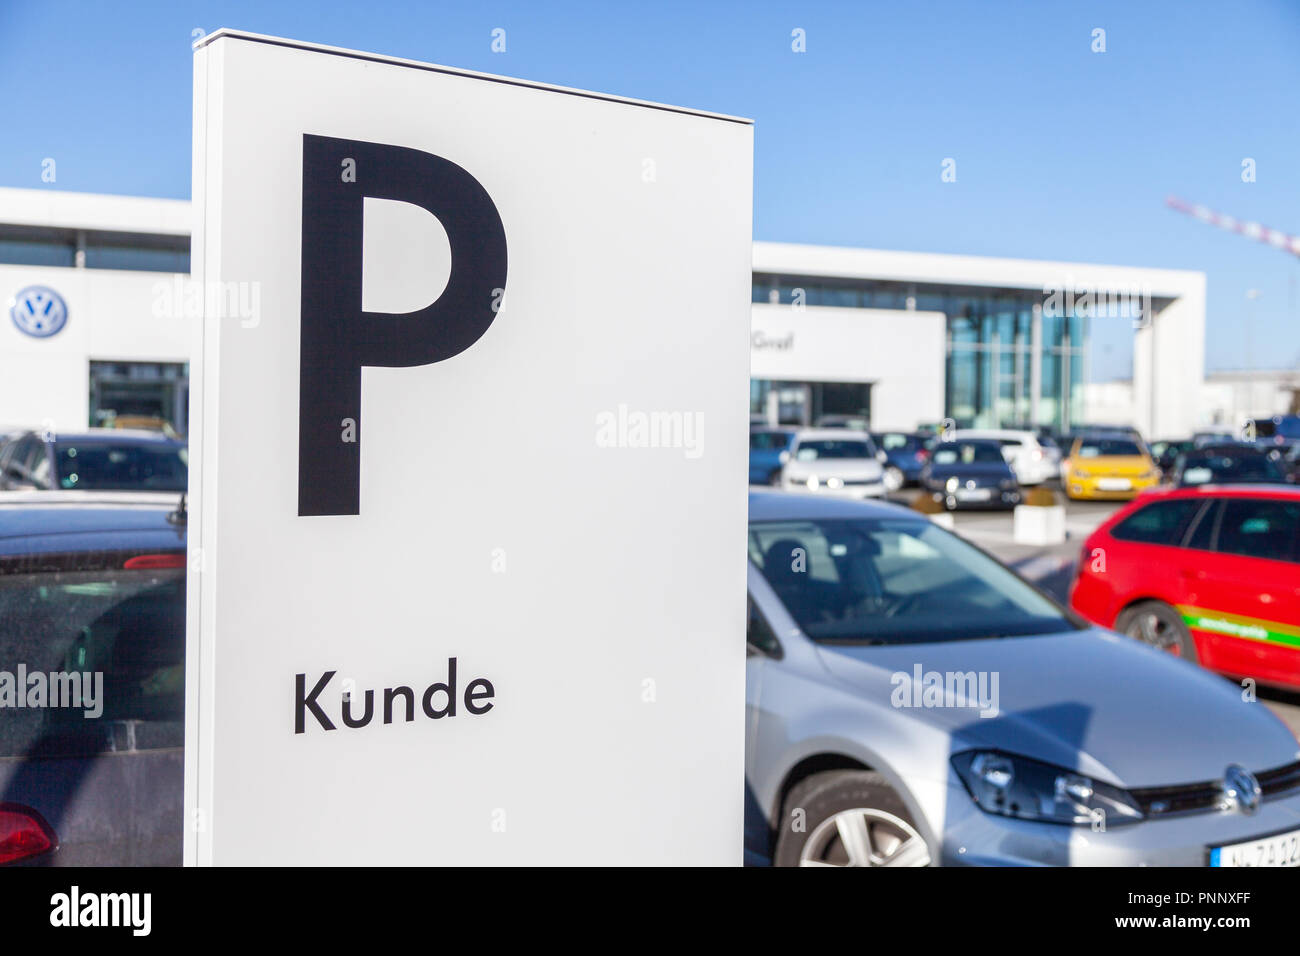 FUERTH / ALLEMAGNE - 25 février 2018 : : parking area près d'un concessionnaire Volkswagen. Moyens Kunde client. Volkswagen est une marque allemande fondée o Banque D'Images